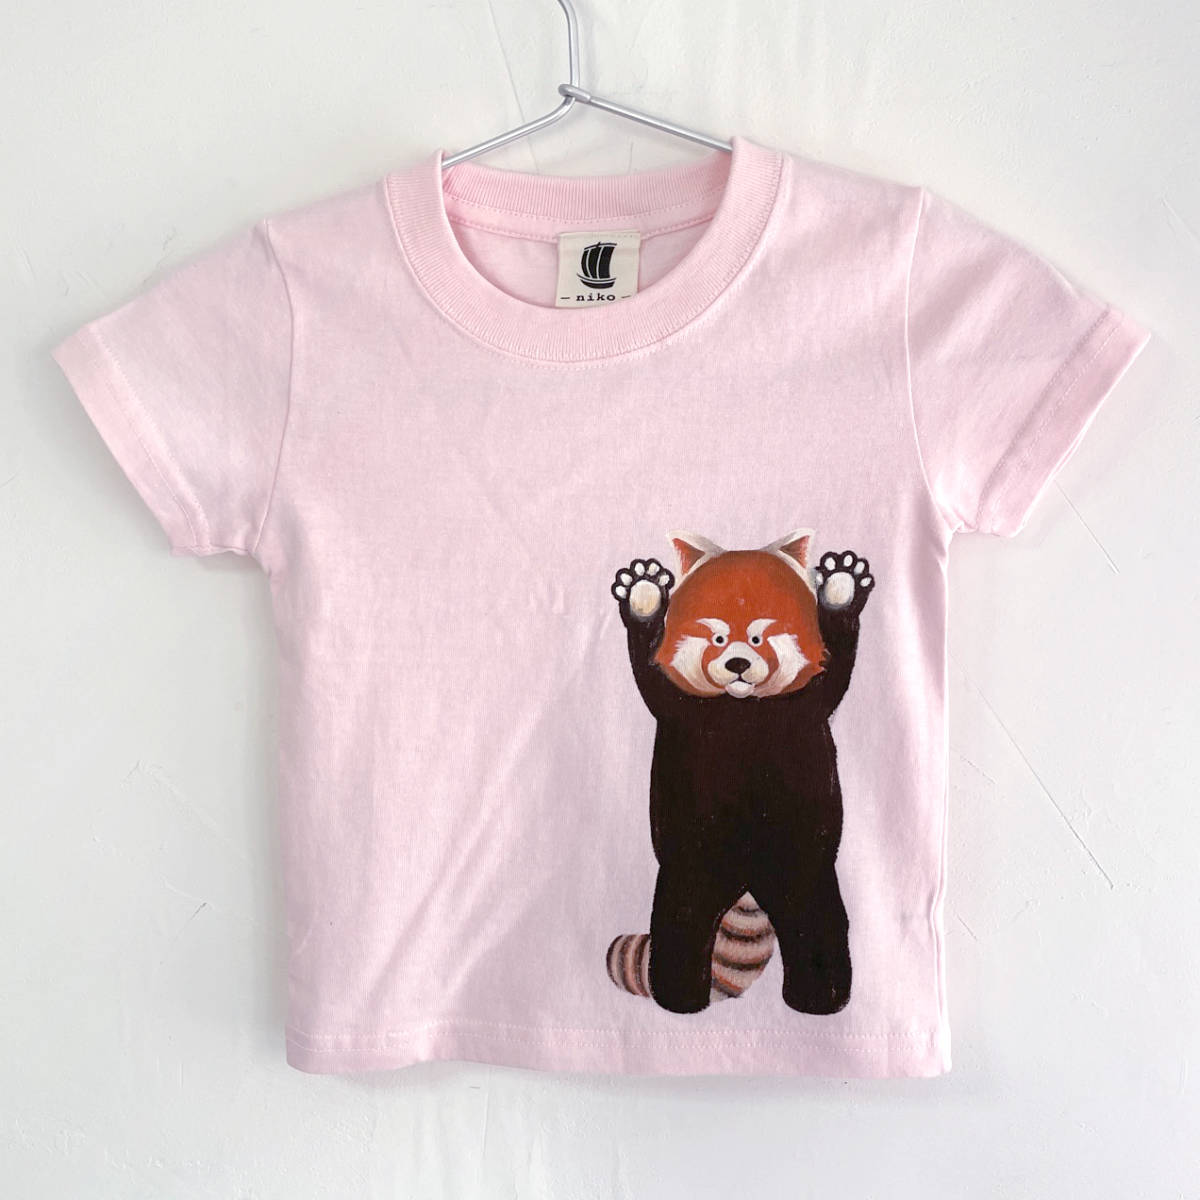 키즈 티셔츠, 사이즈 100, 분홍색, 레드 팬더 프린트 티셔츠, 하얀색, 수공, 핸드페인팅 티셔츠, 상의, 반소매 티셔츠, 100(95~104cm)